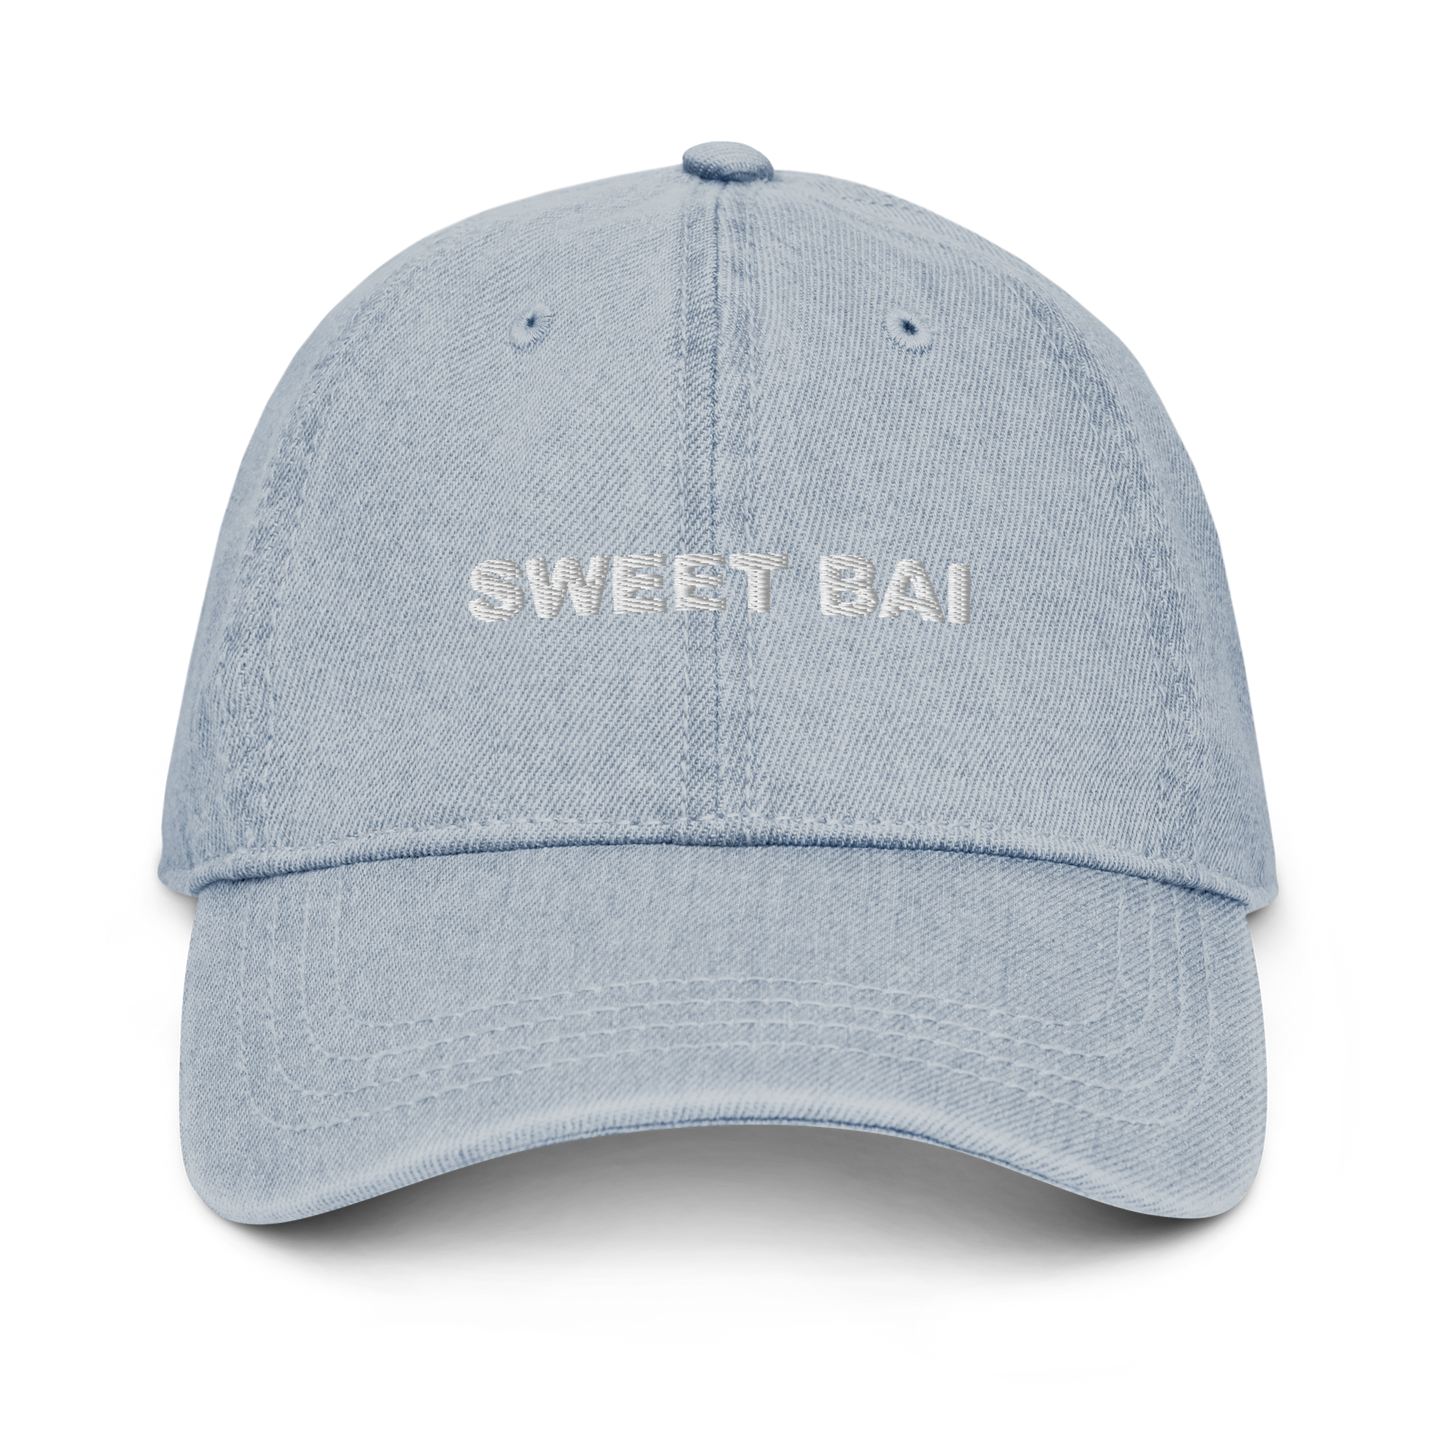 Sweet Bai Denim Hat